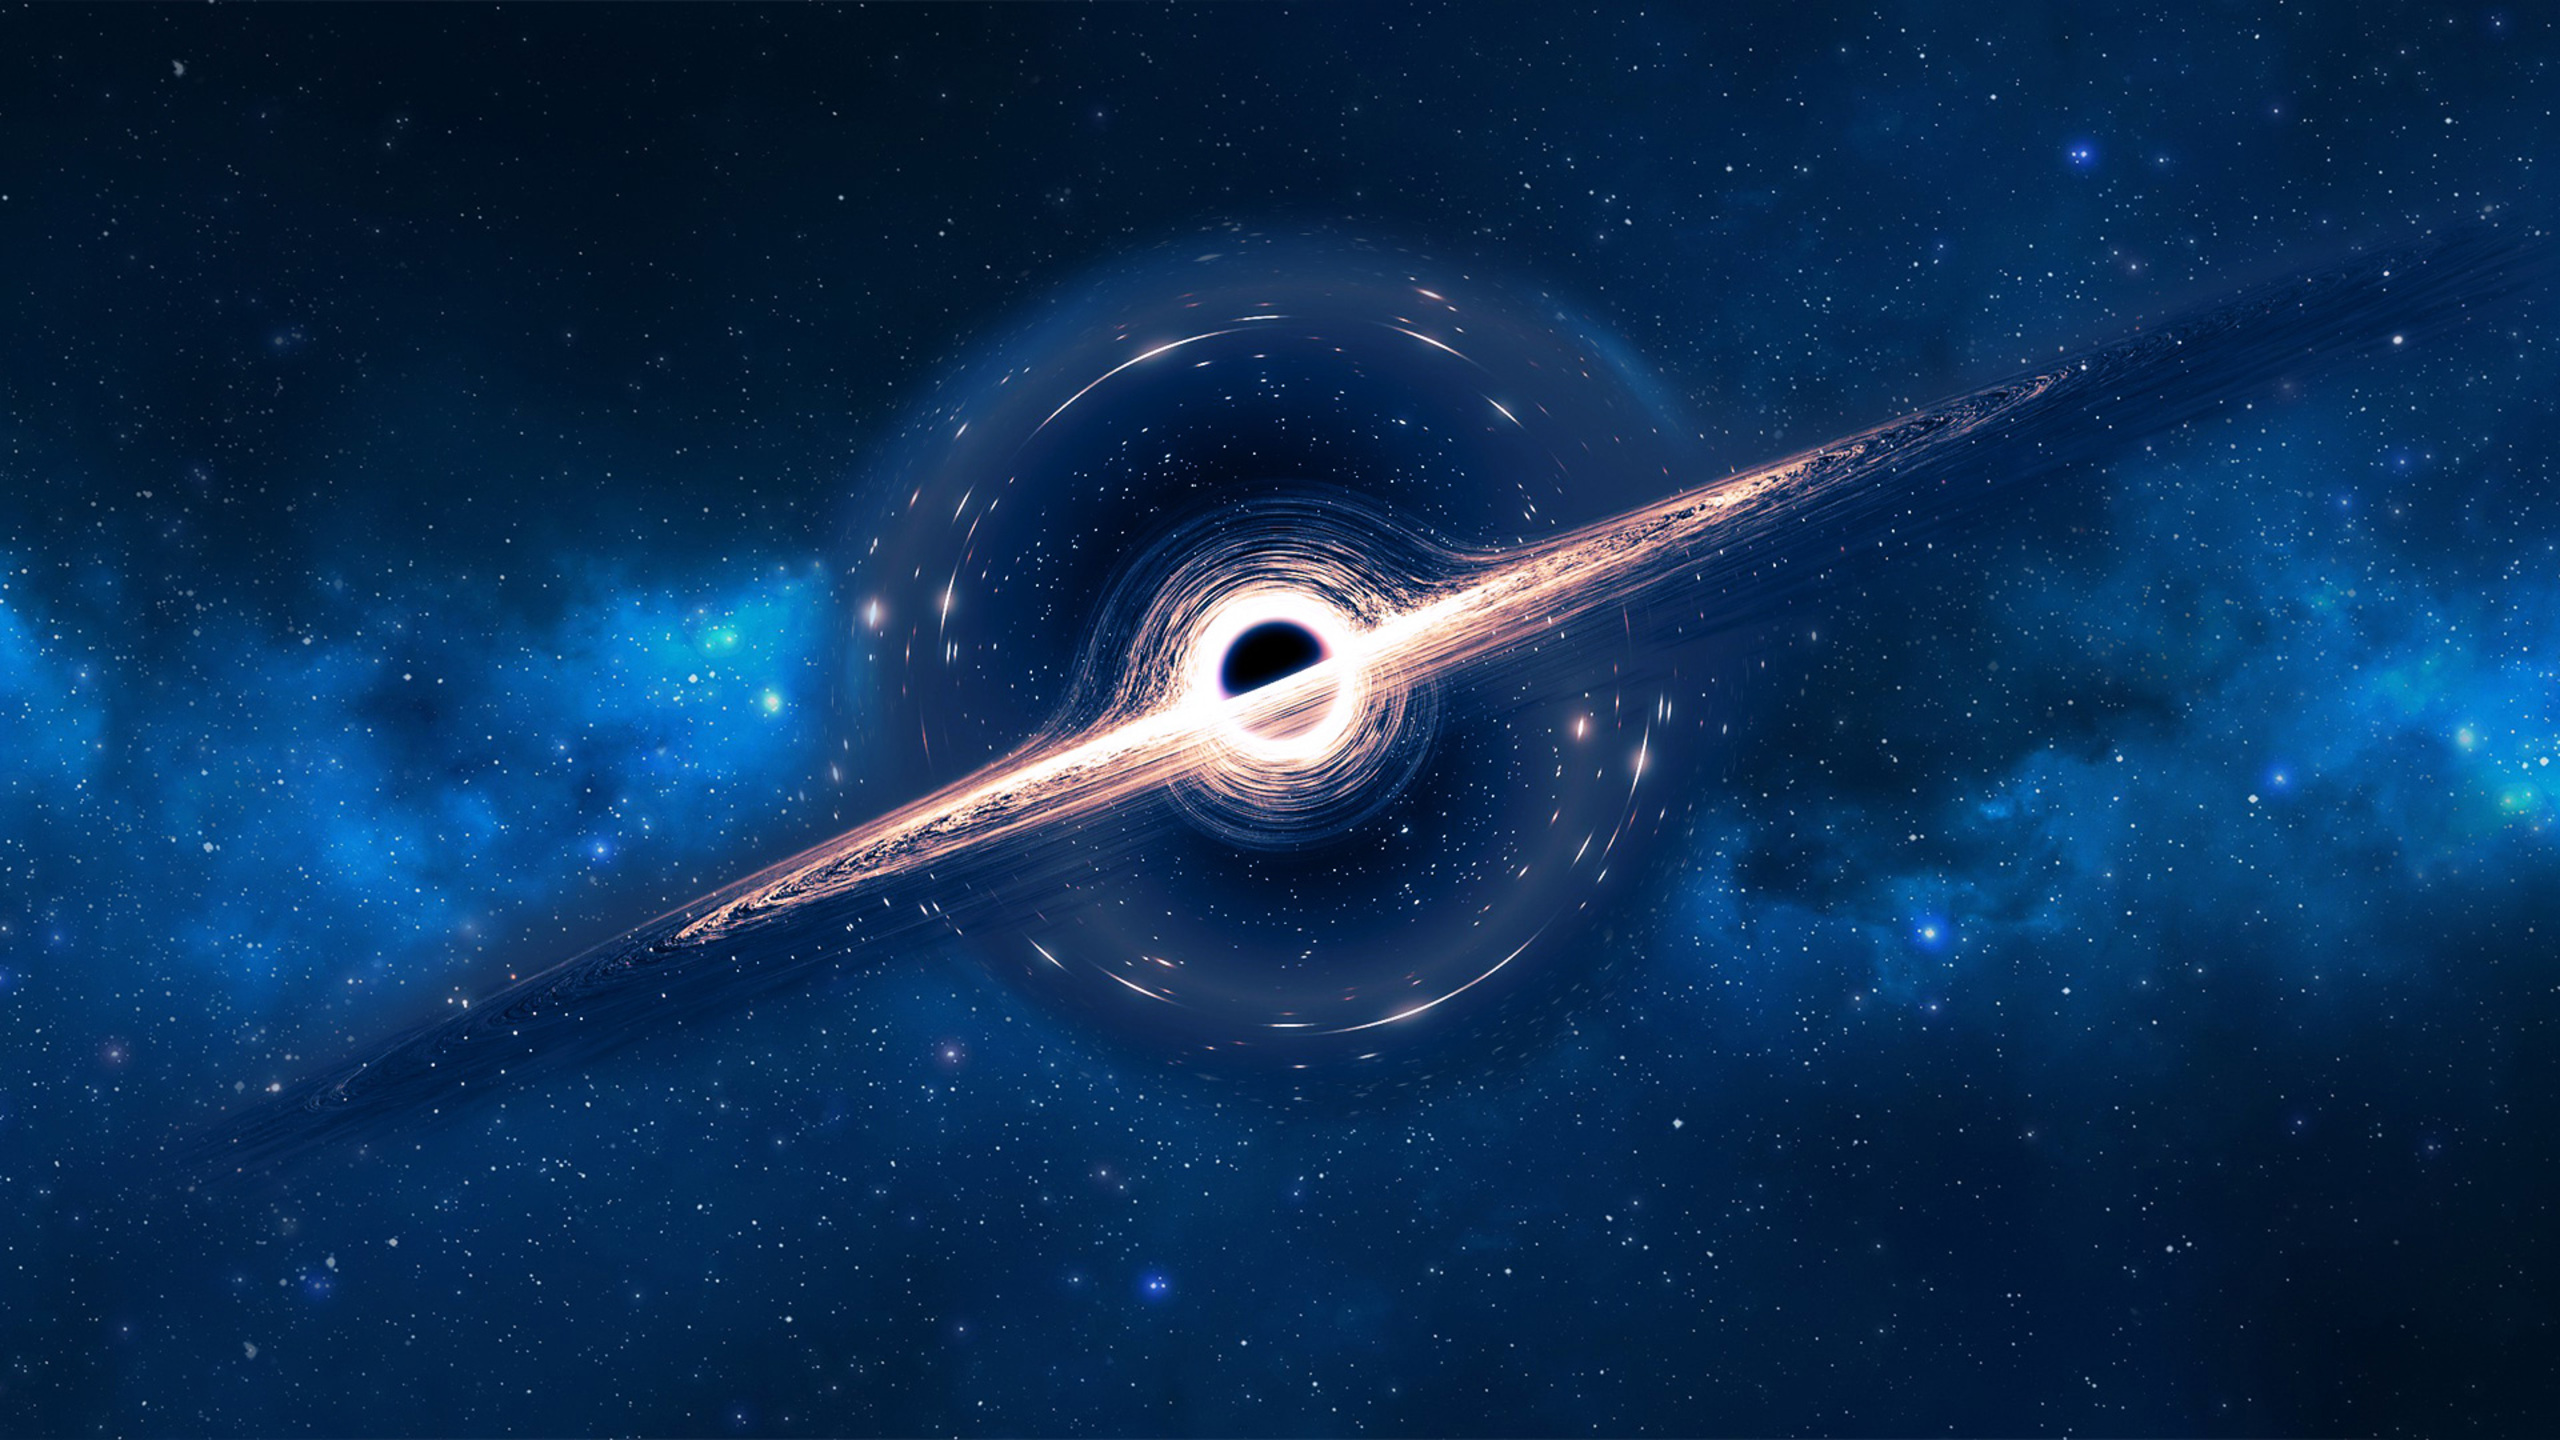 Hình nền độ phân giải cao, lỗ đen: Hình nền về lỗ đen với độ phân giải cao sẽ mang đến cho bạn một trải nghiệm hình ảnh tuyệt vời và chi tiết, khiến bạn có cảm giác như đang trực tiếp tham quan vũ trụ đầy kì diệu. Hãy sử dụng những hình nền này để trang trí cho máy tính của bạn.